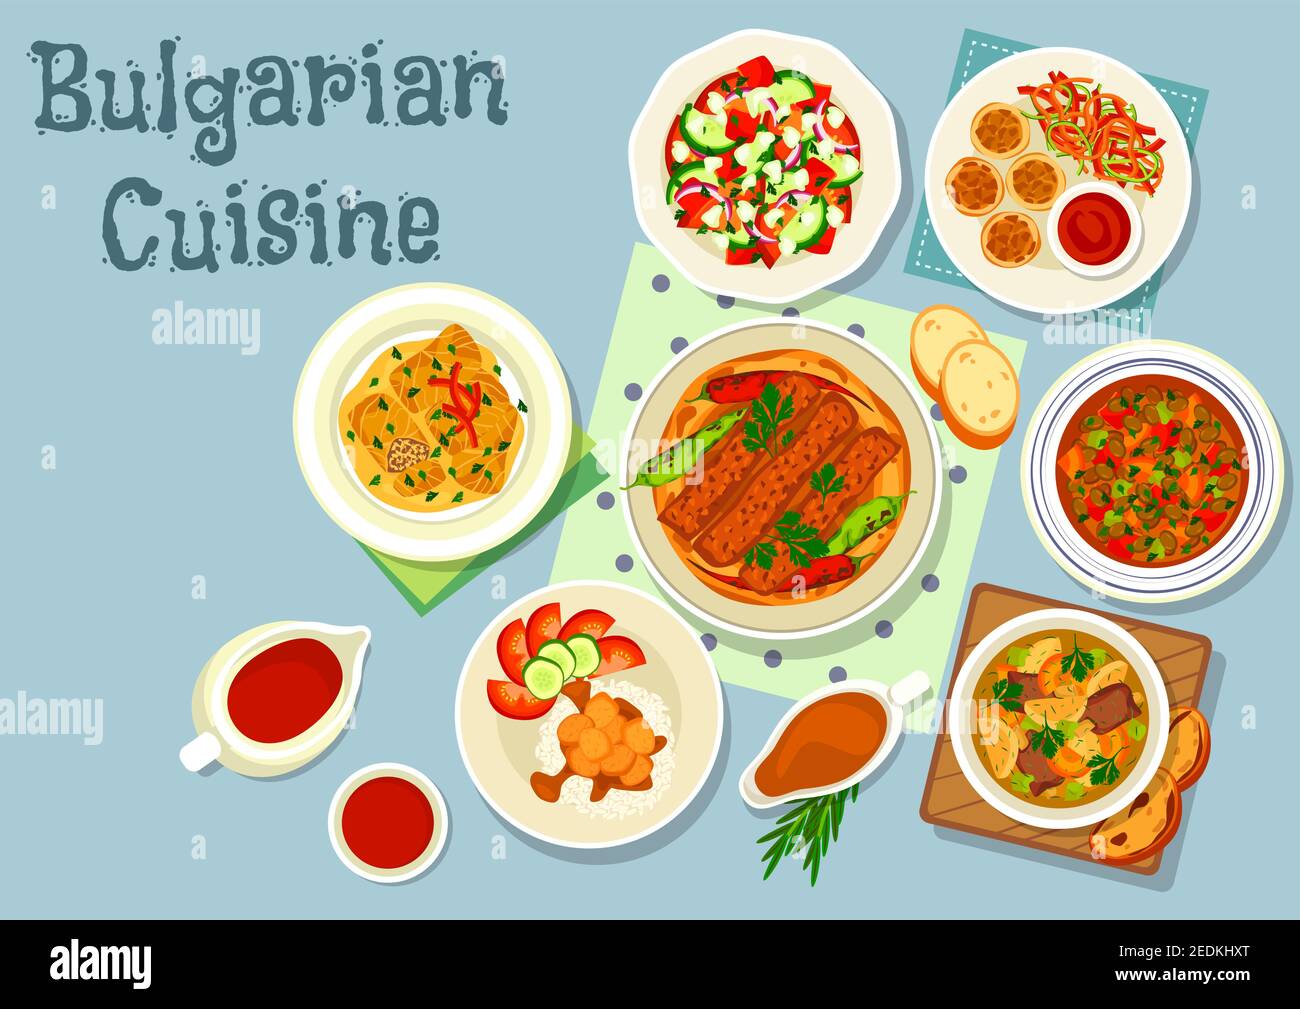 Cuisine bulgare plats salés icône de viande grillée au poivre sur pain plat, boulettes de légumes à la sauce tomate, salade de légumes au fromage, rôti de bœuf Illustration de Vecteur